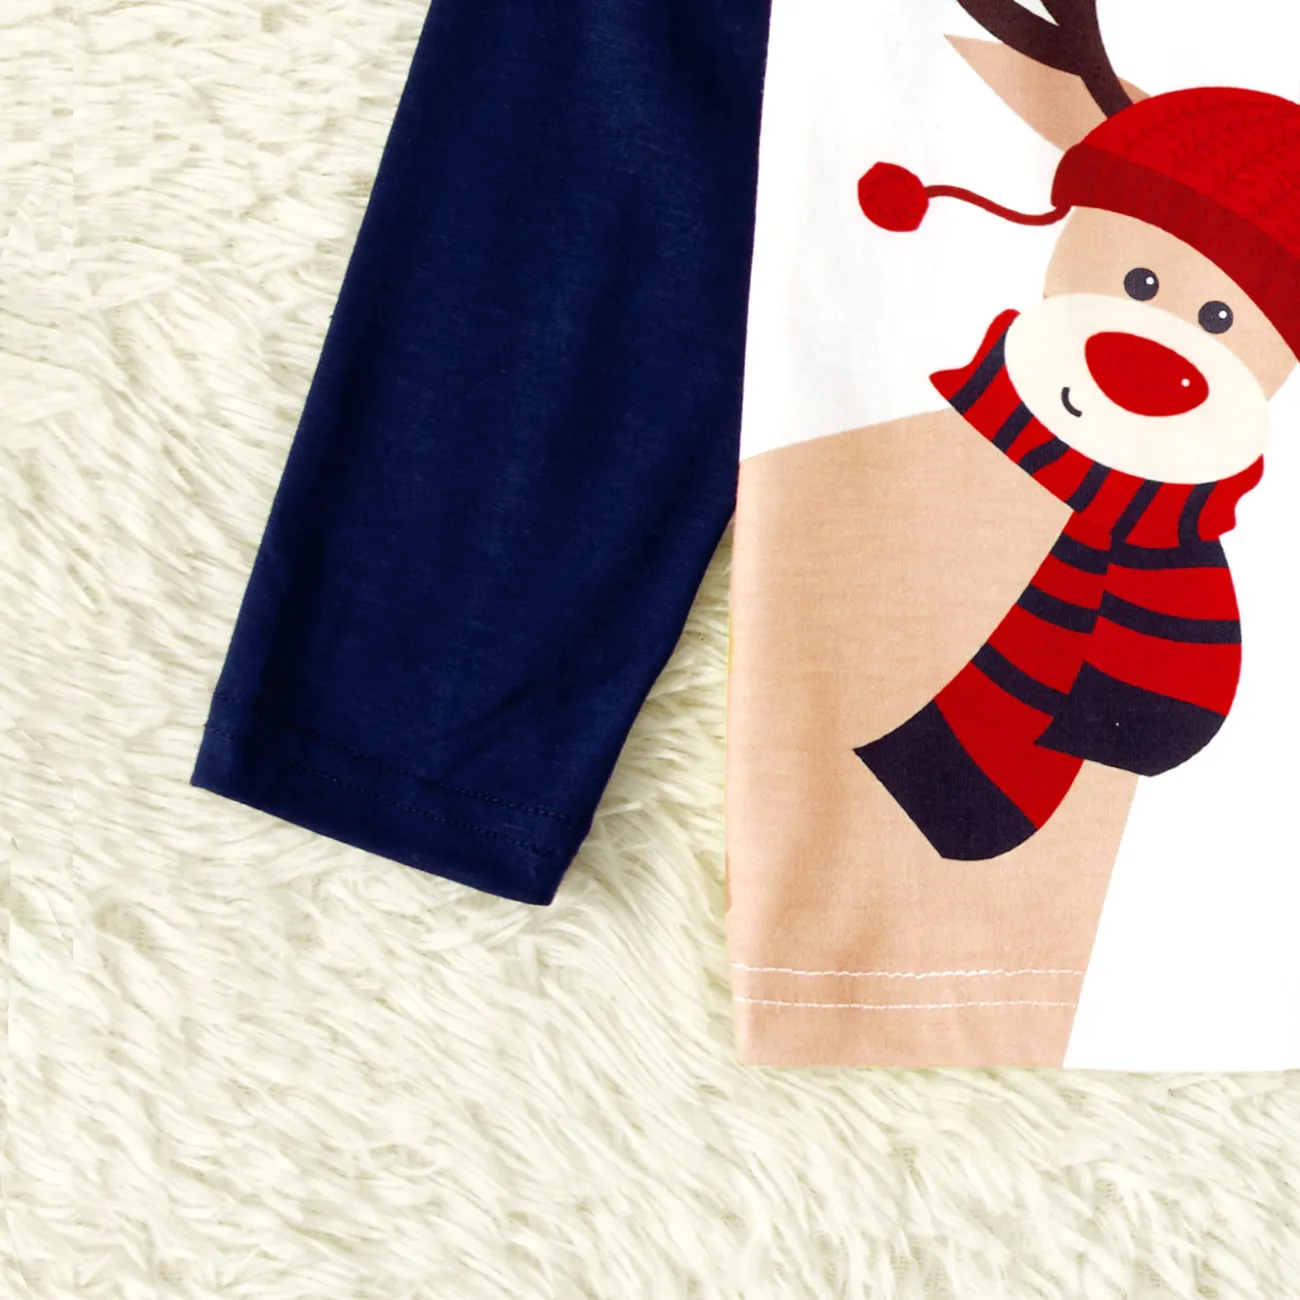 Natal Look de família Manga comprida Conjuntos de roupa para a família Pijamas (Flame Resistant) Azul Escuro/Branco/Vermelho big image 1